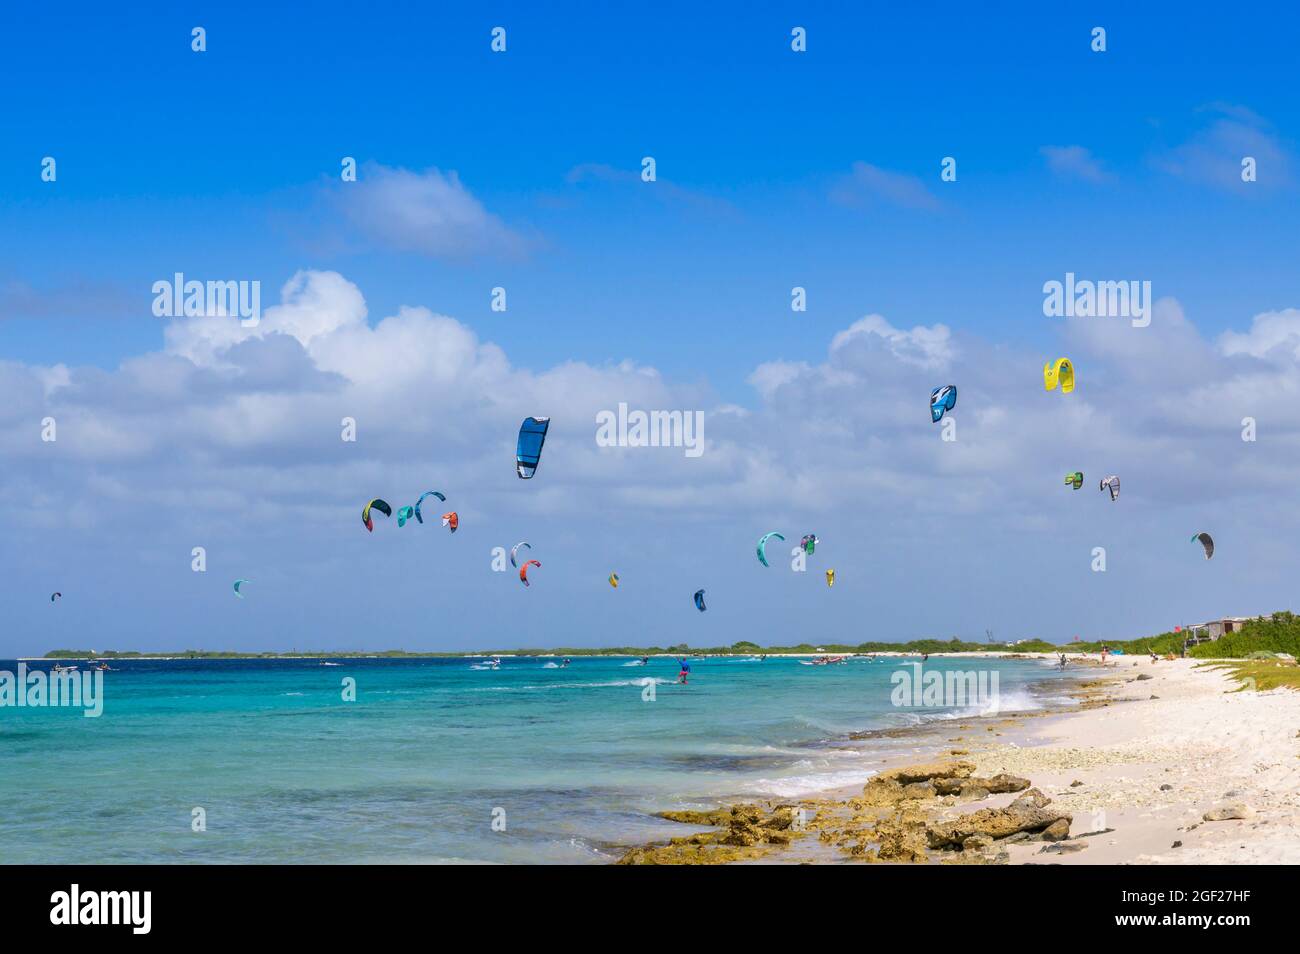 Kitesurfen am Strand, Bonaire, niederländische Karibik. Stockfoto